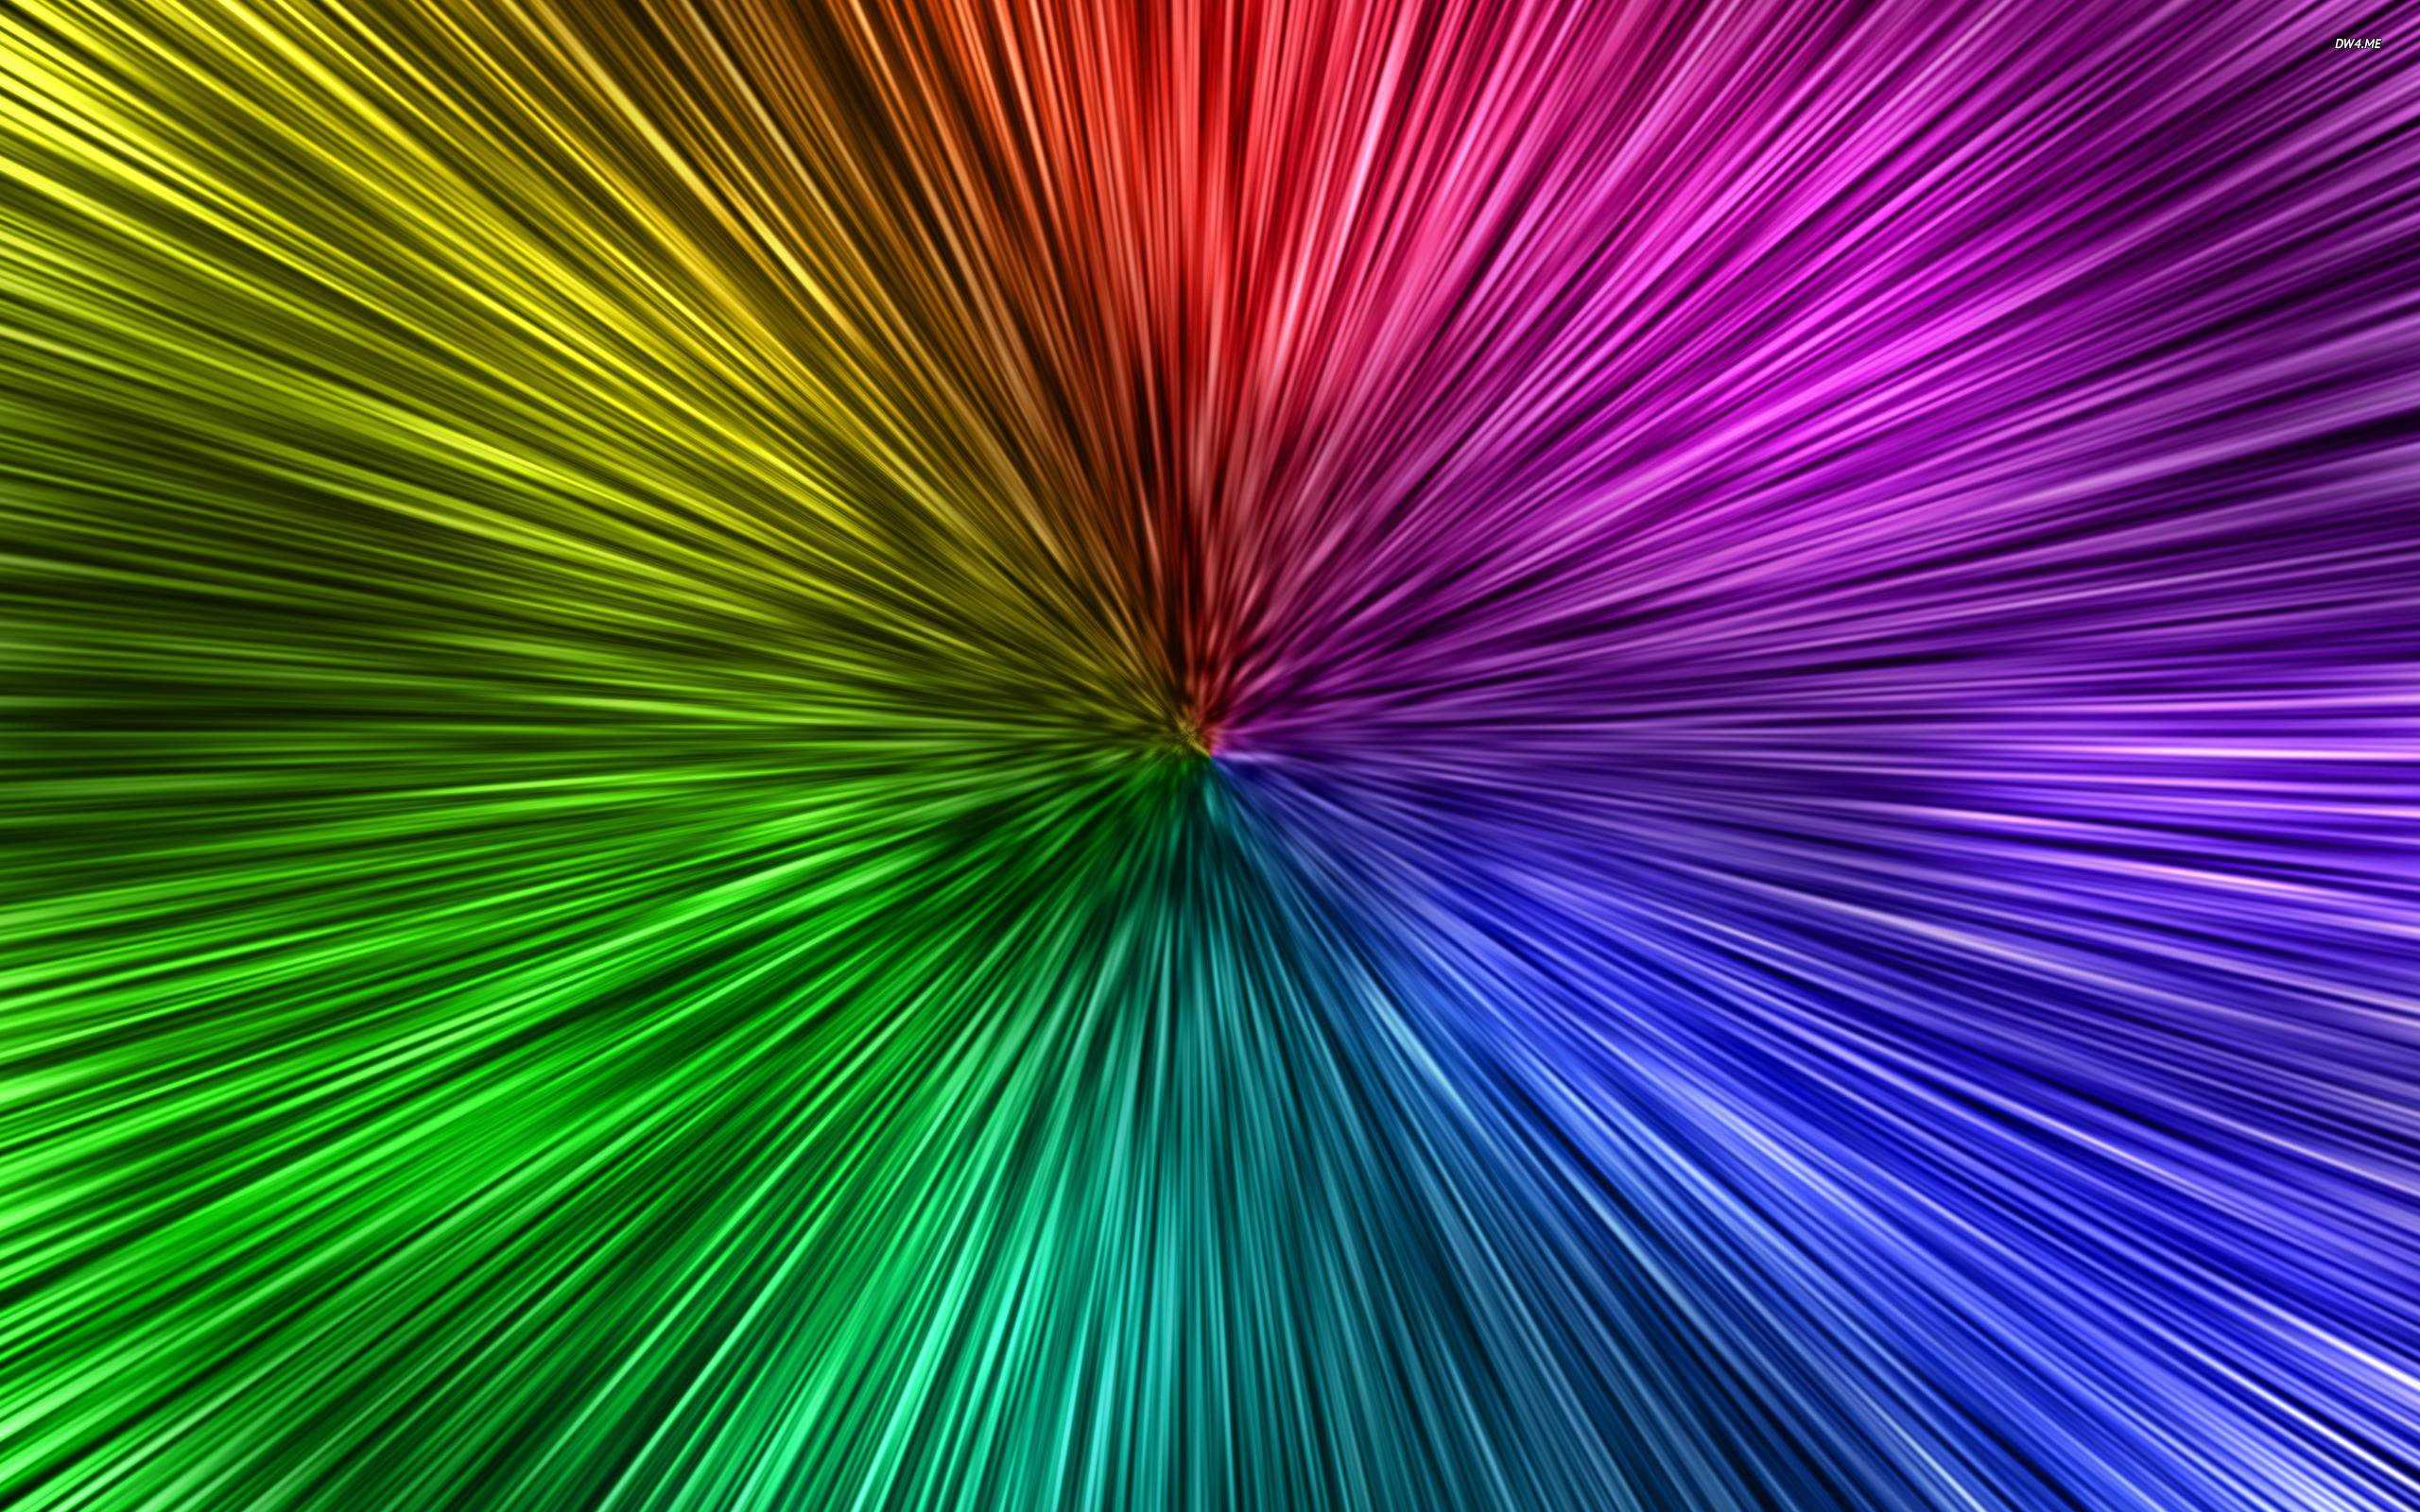  Coole Neon Hintergrundbild 2560x1600. Cool Neon Background Desktop Free Download